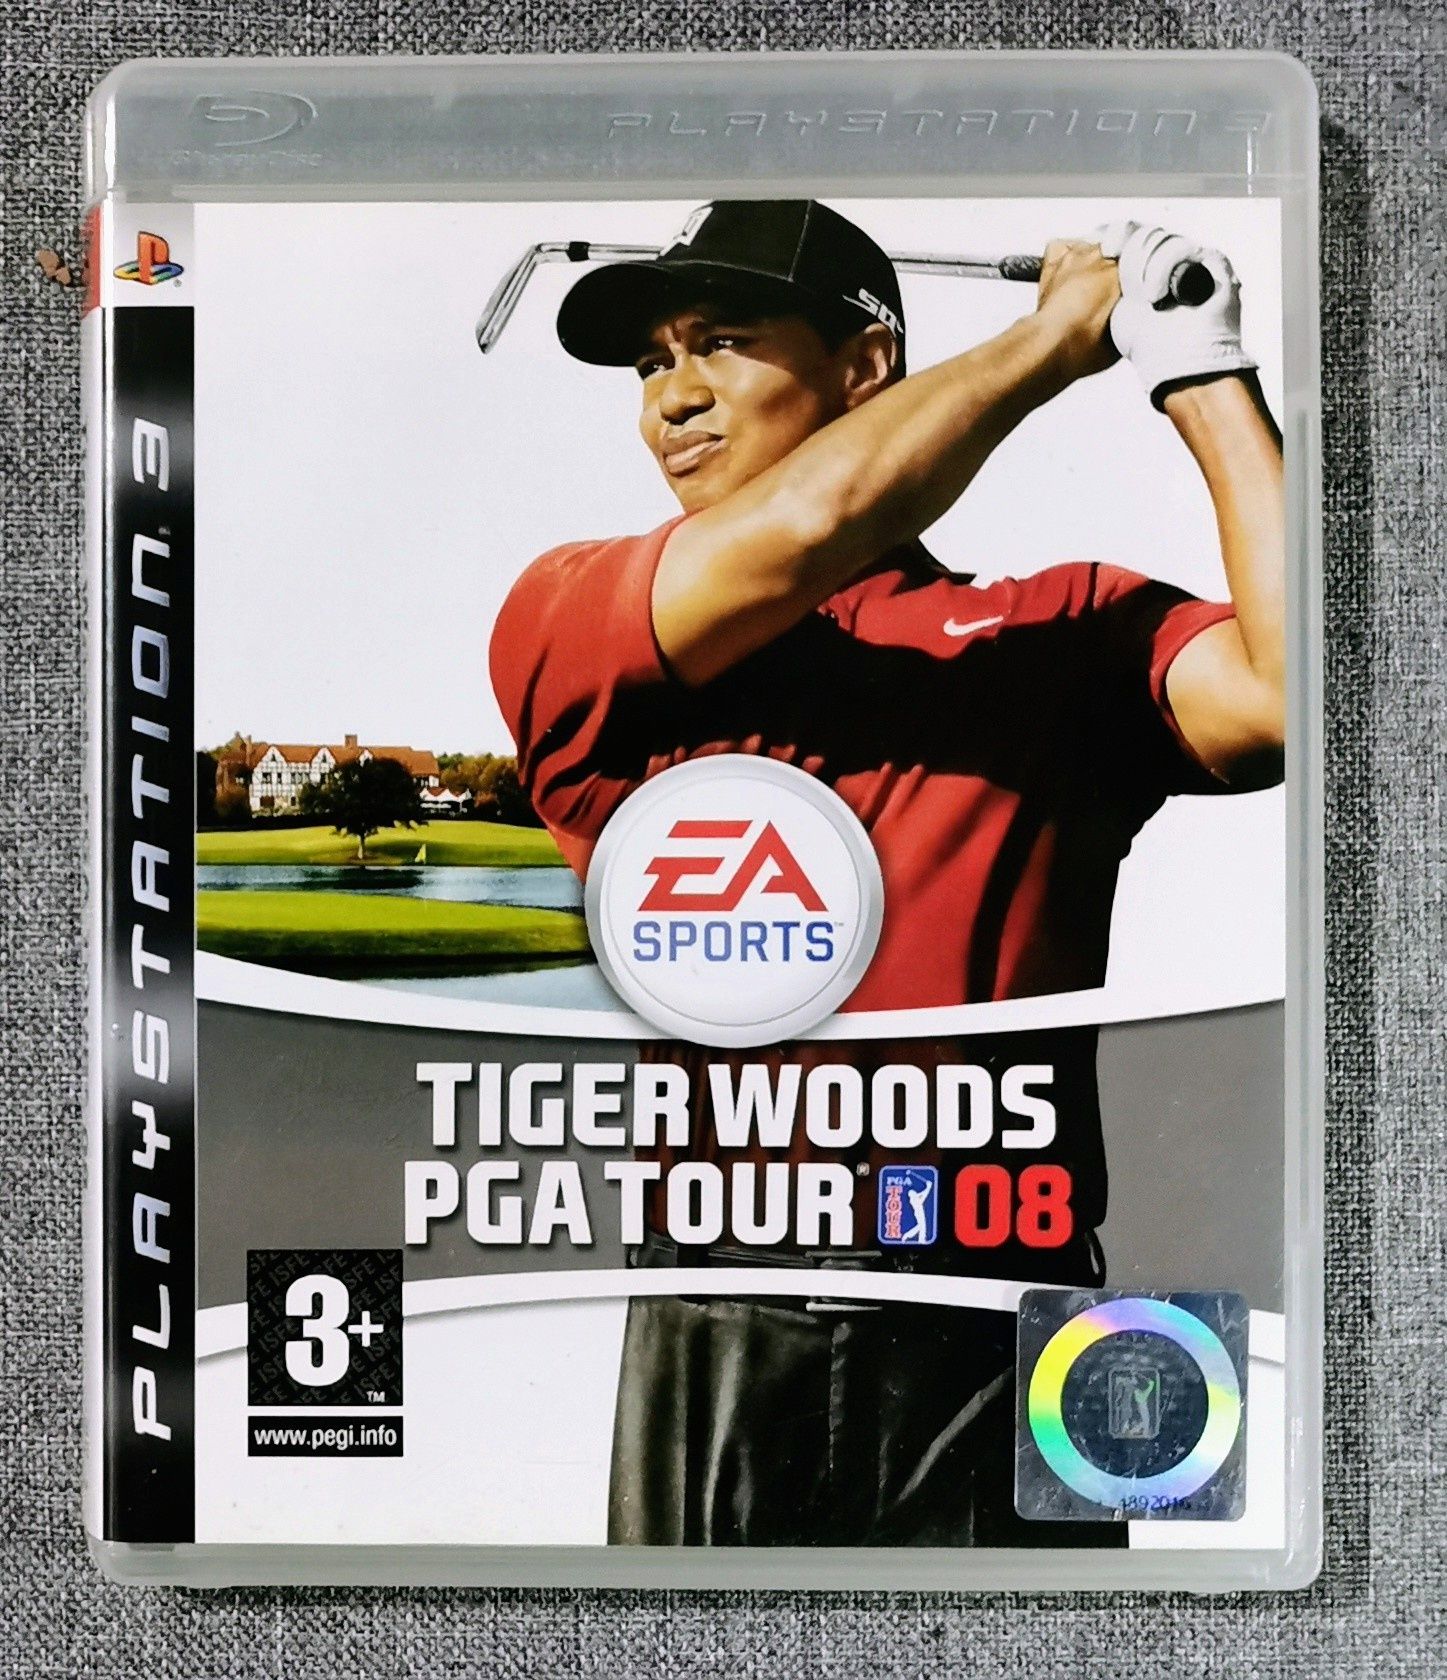 Tiger Woods PGA Tour 08 gra PlayStation 3 PS3 golf OKAZJA !